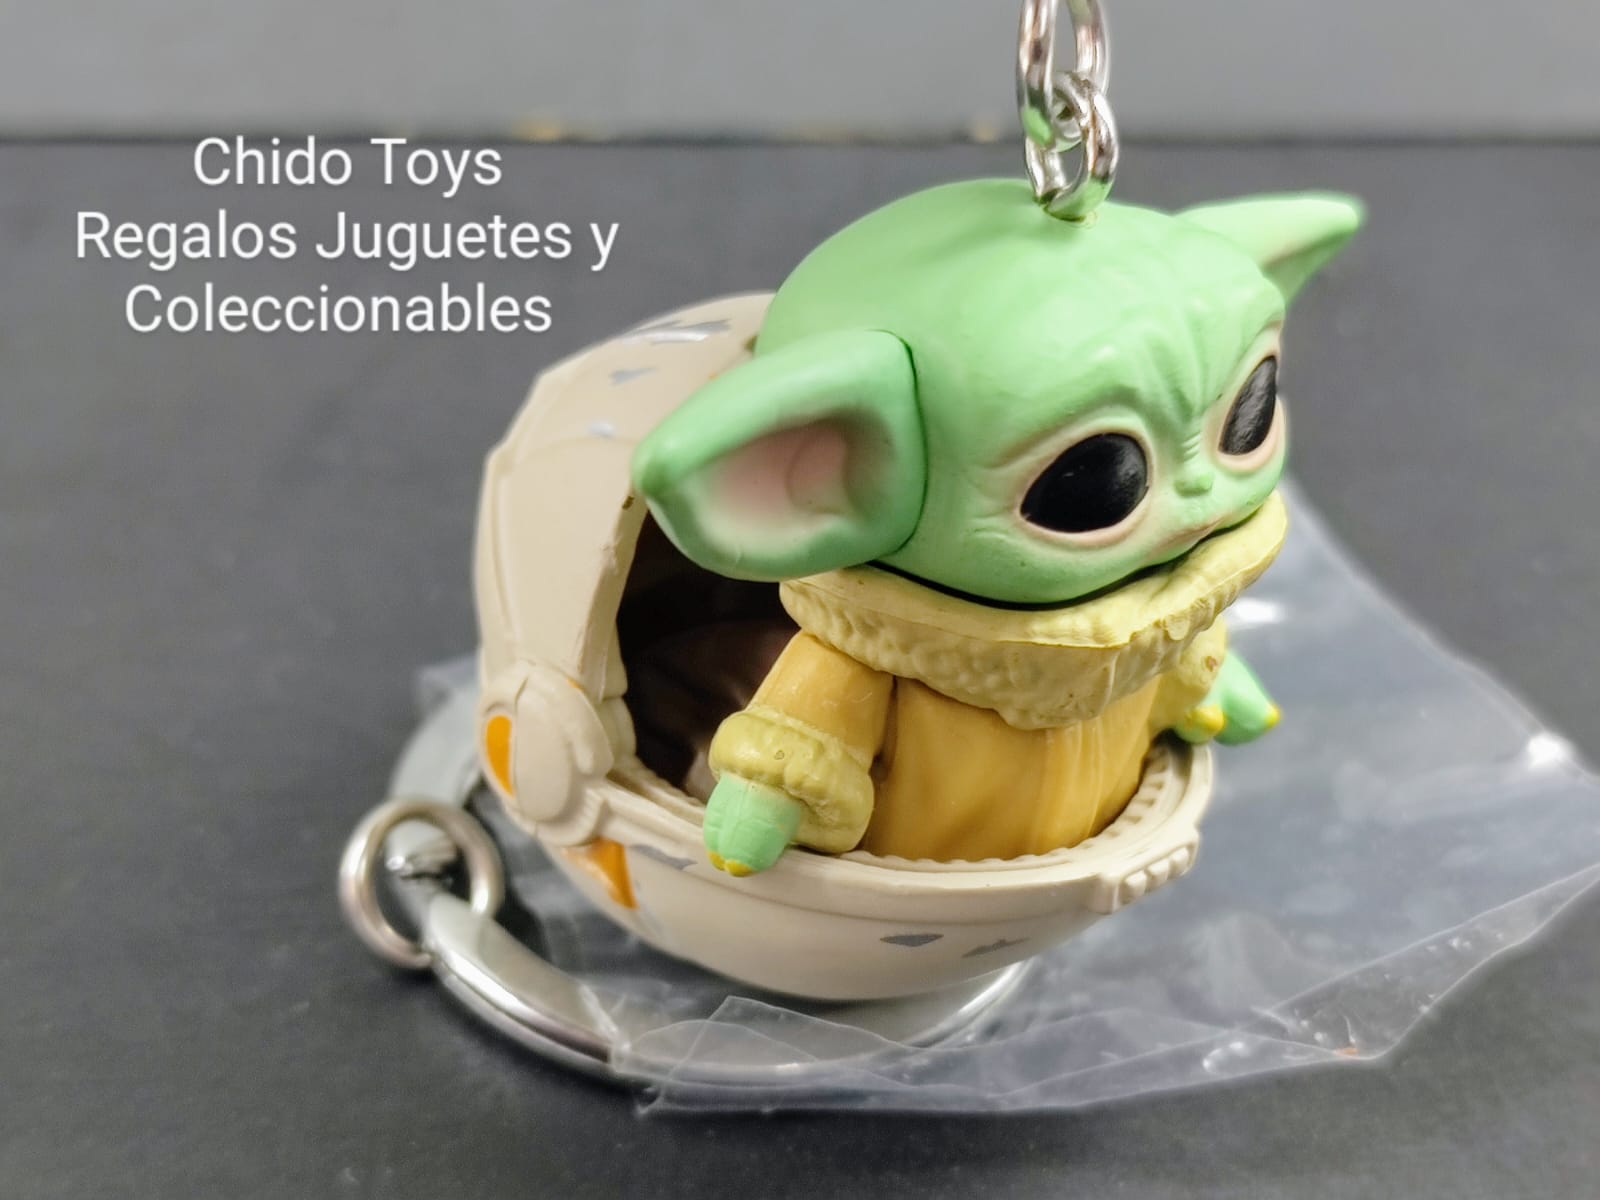 Llavero Funko, modelo the Child edad 3+ - Chido Toys